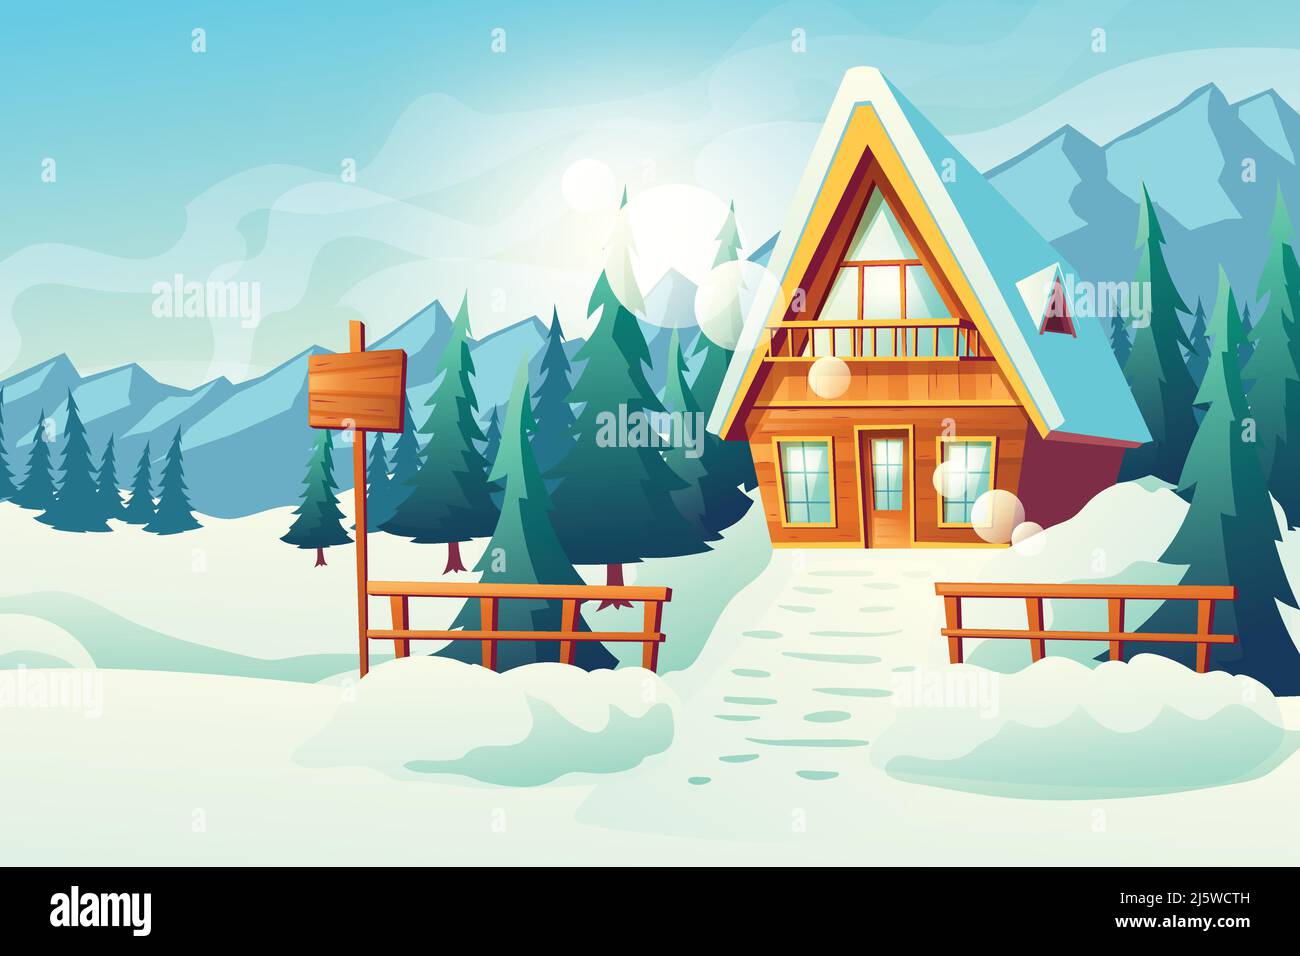 Land oder Dorf Cottage House in verschneiten Bergen Cartoon-Vektor. Winter Resort komfortables, kleines Hotel Holzgebäude mit Schrägdach, Balkon, Stock Vektor